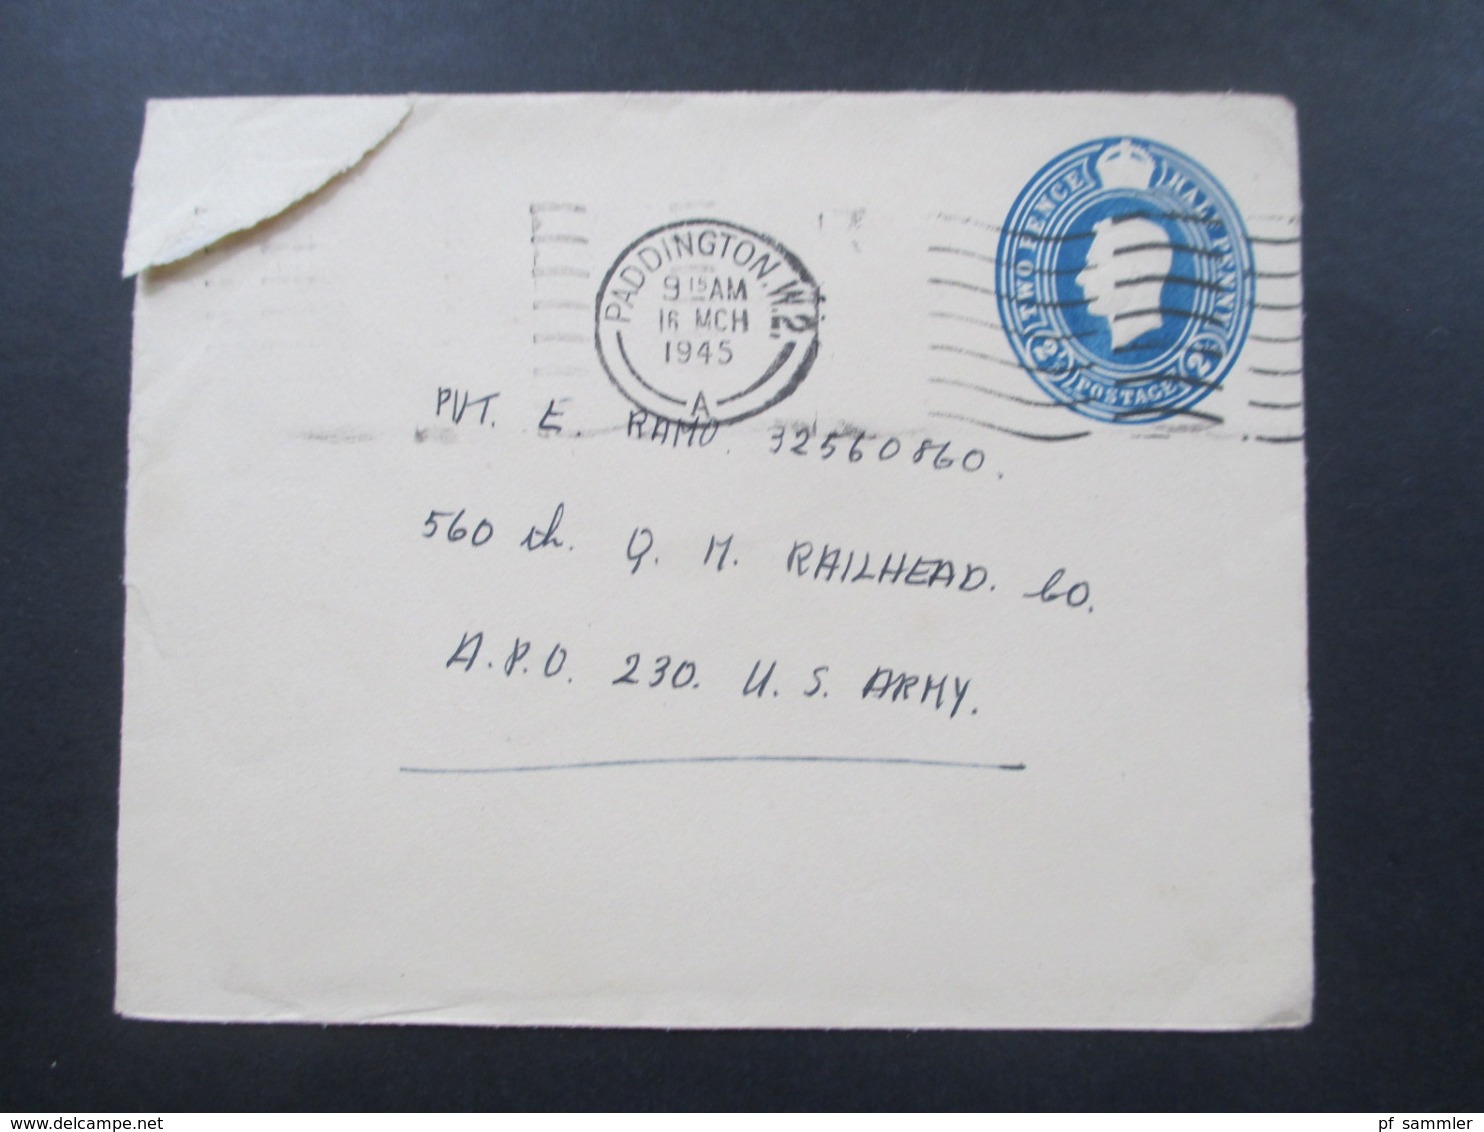 GB 16.3.1945 Die Letzten Kriegstage! GA Umschlag Paddington An Die US Army APO 230 Stempel US Army Postal Service - Briefe U. Dokumente